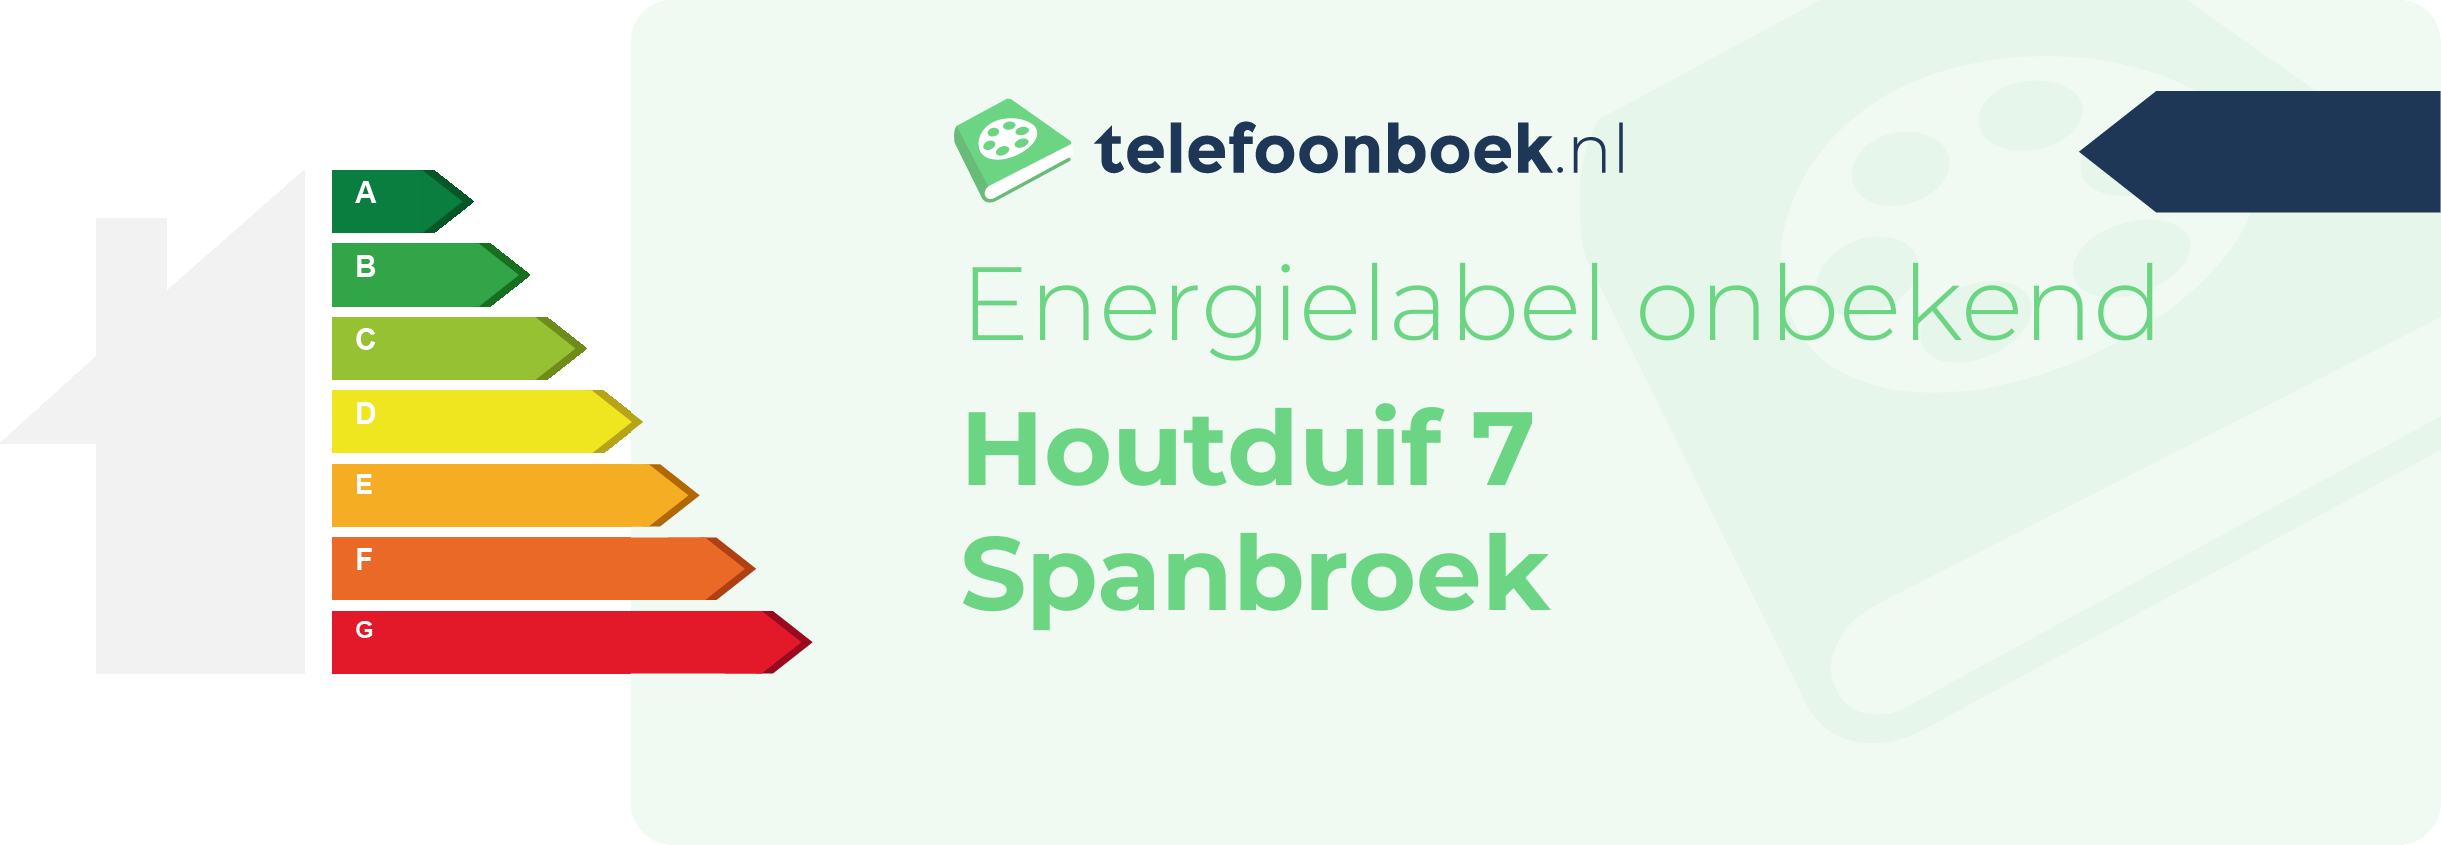 Energielabel Houtduif 7 Spanbroek